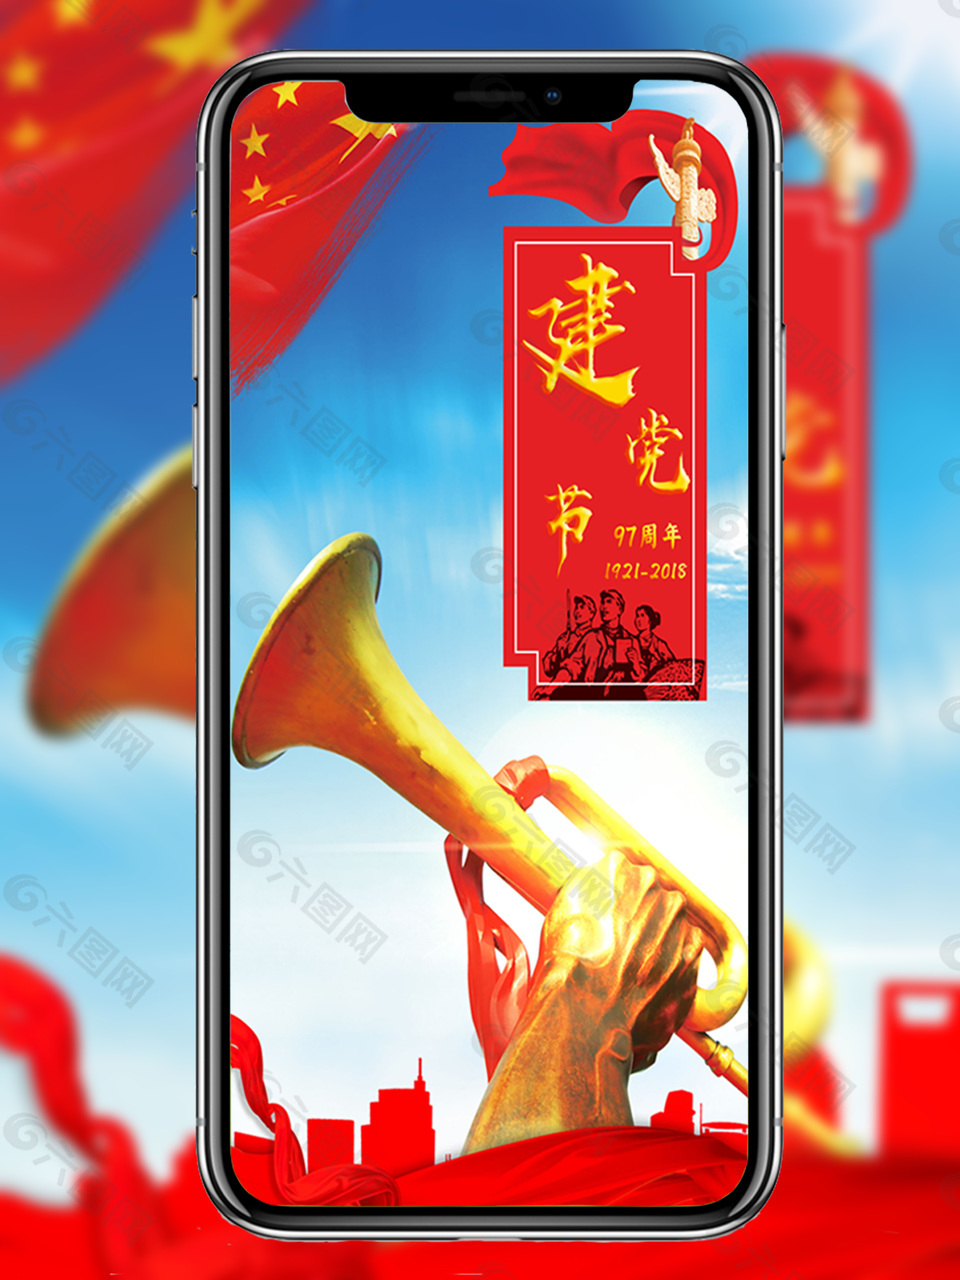 建党节节日海报